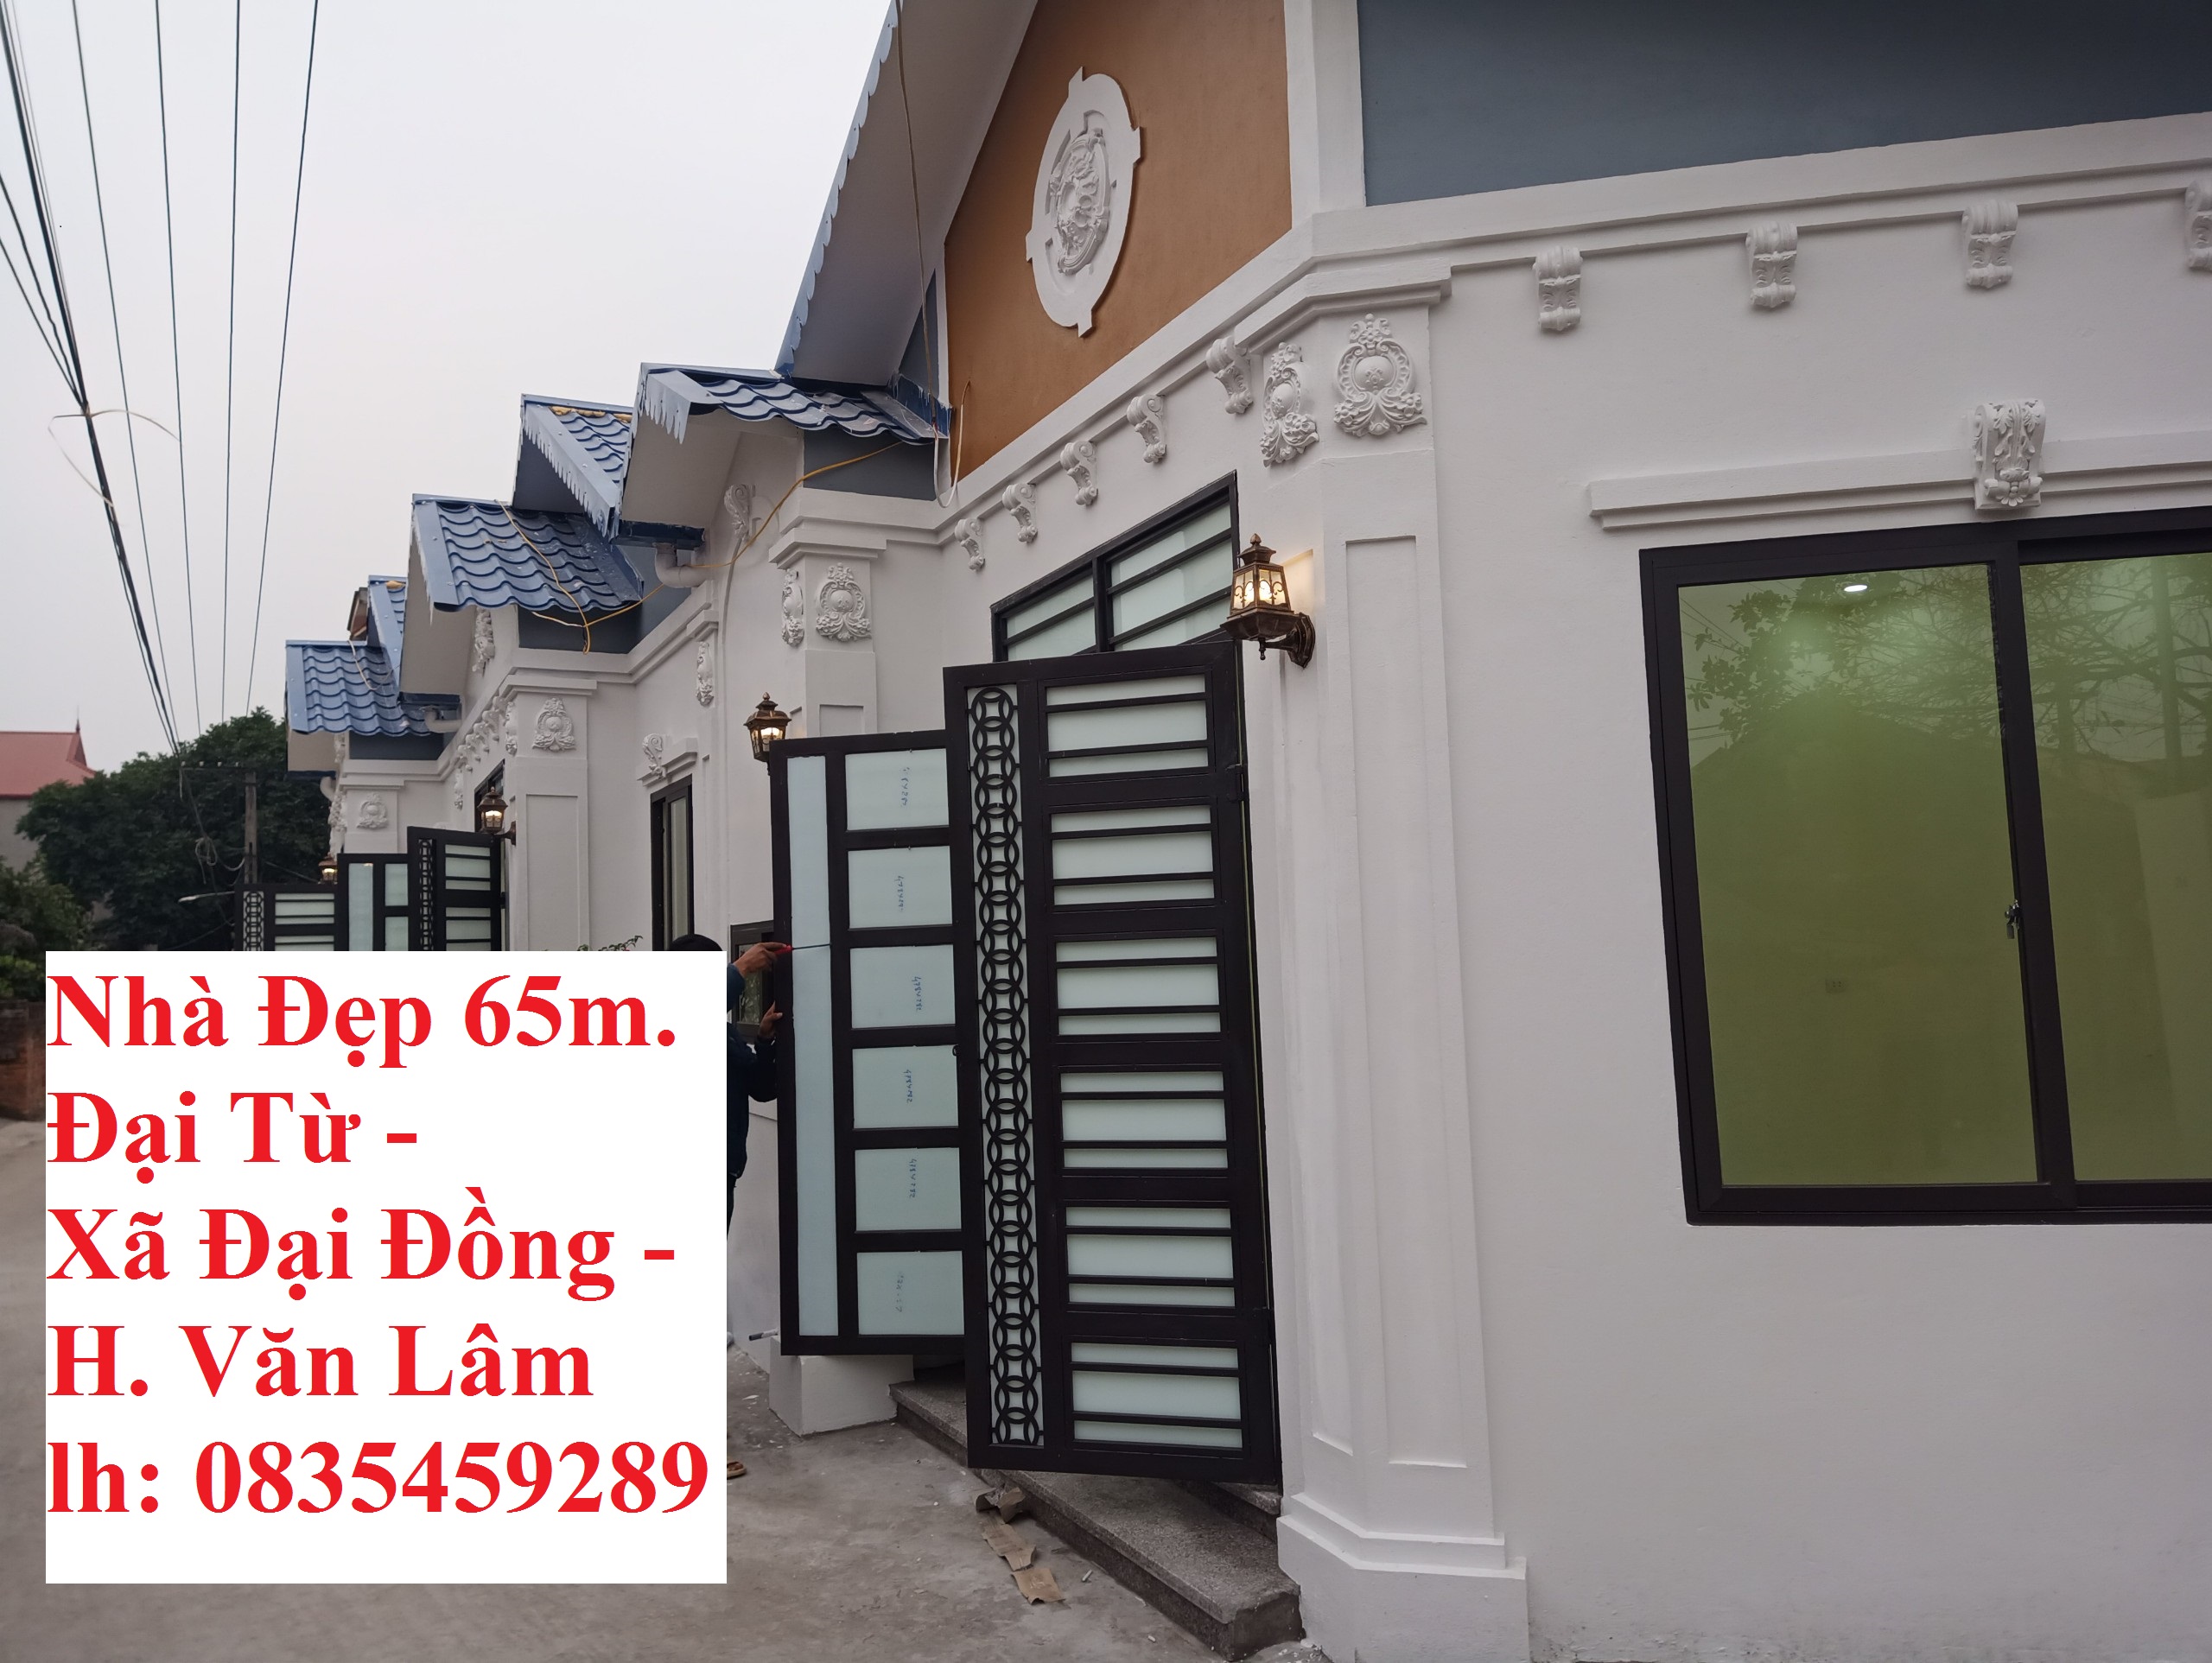 Tặng ngay 1 Cây Vàng cho khách mua nhà ở Đại Đồng, Văn Lâm lh 0835459289 1